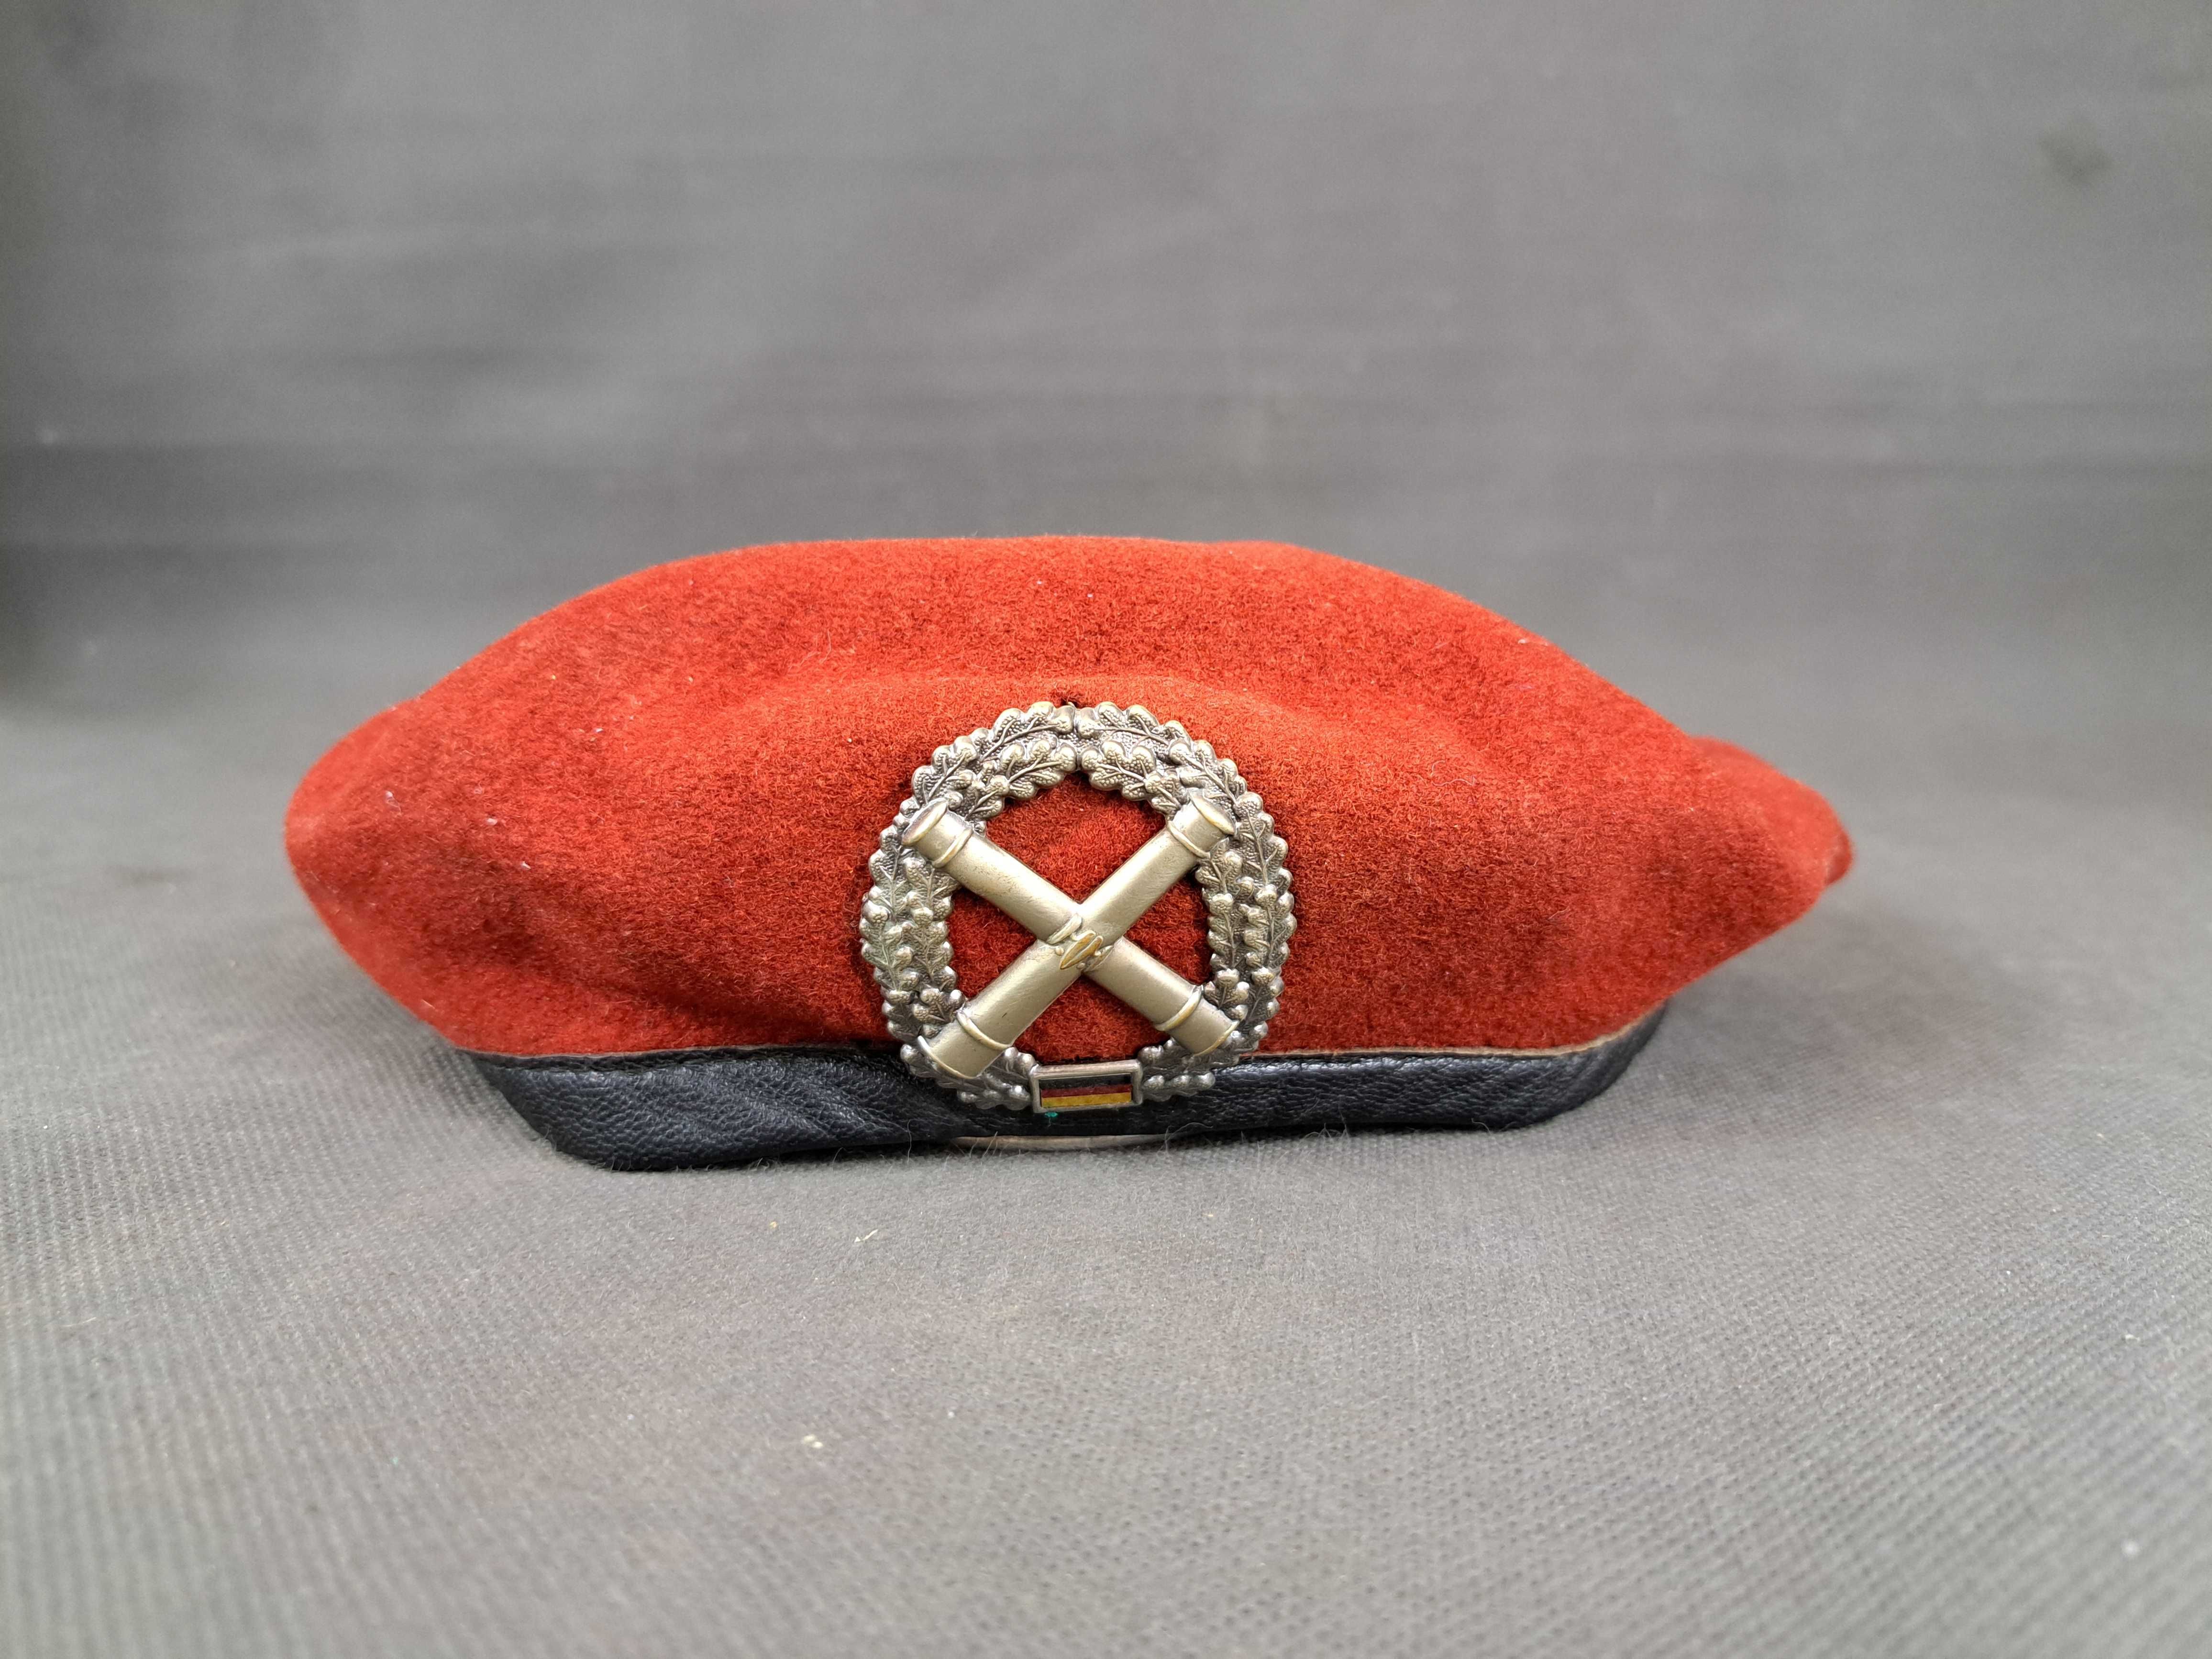 Wojskowy beret niemiecki, czerwony rozm. 59